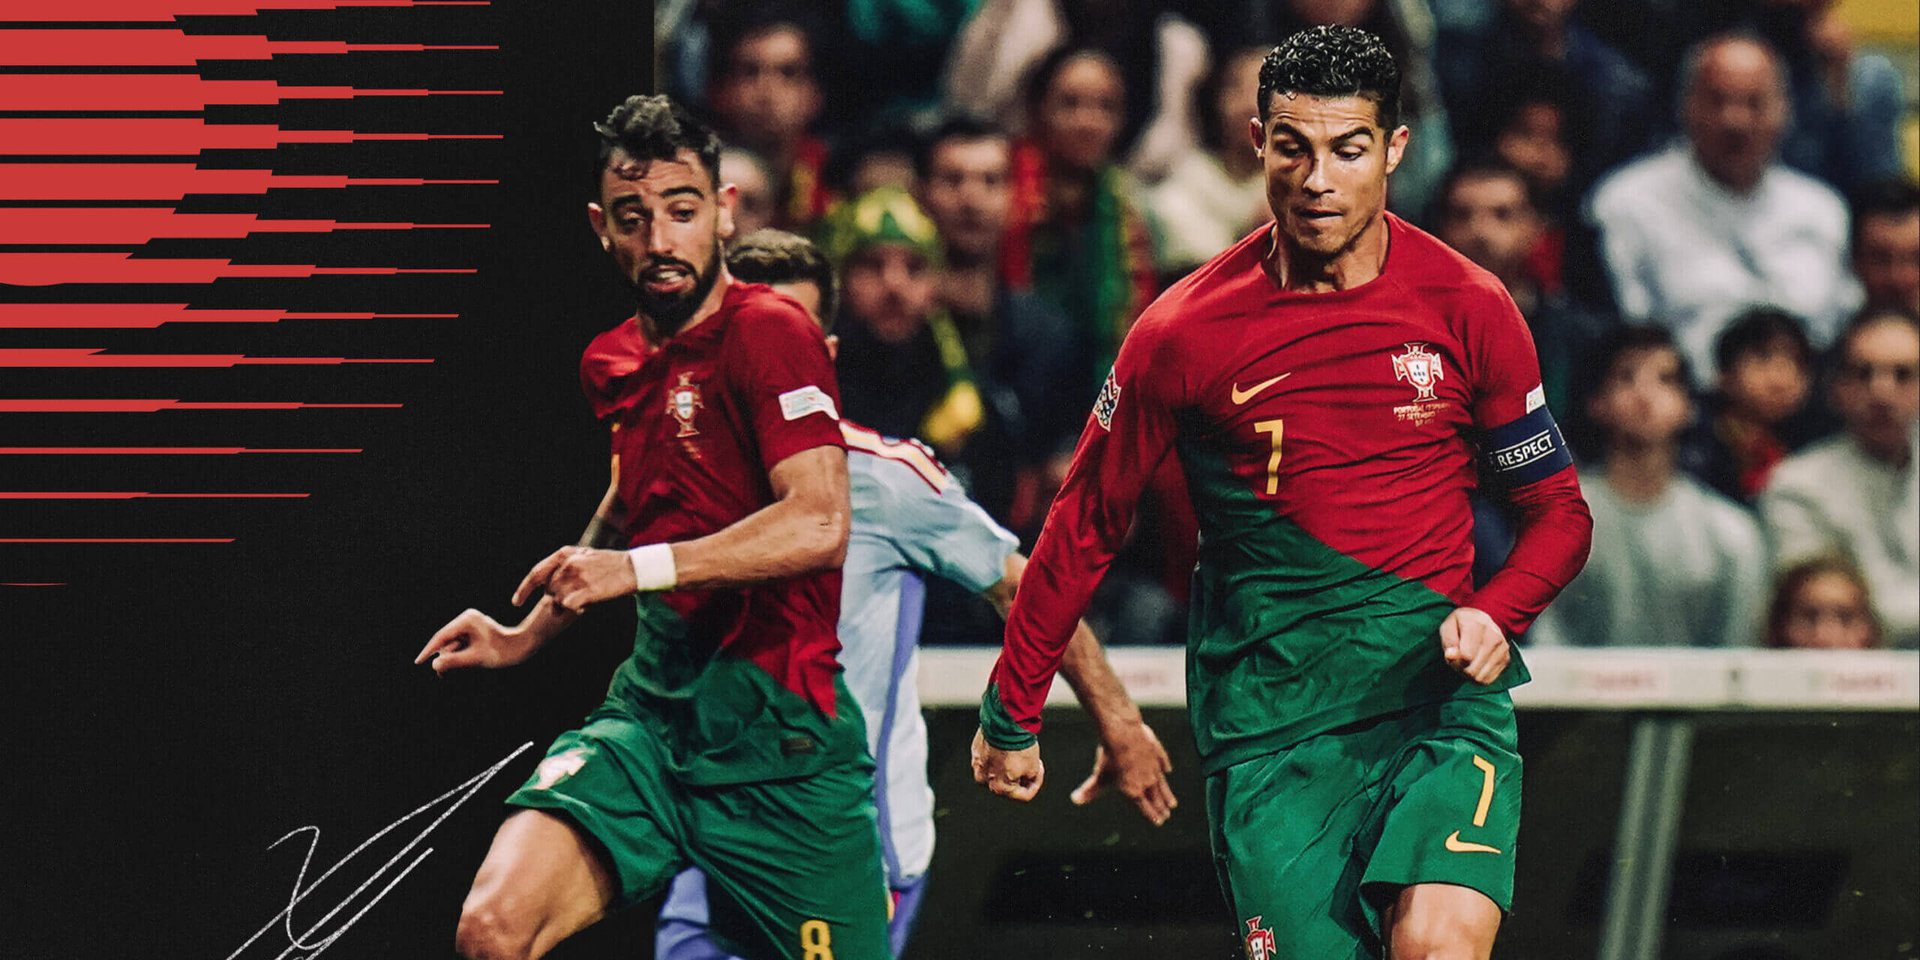 Útmutató a 2022-es portugál világbajnoksághoz: Fiatal sztárok, idősödő sztárok és egy ismerős vita Ronaldóról